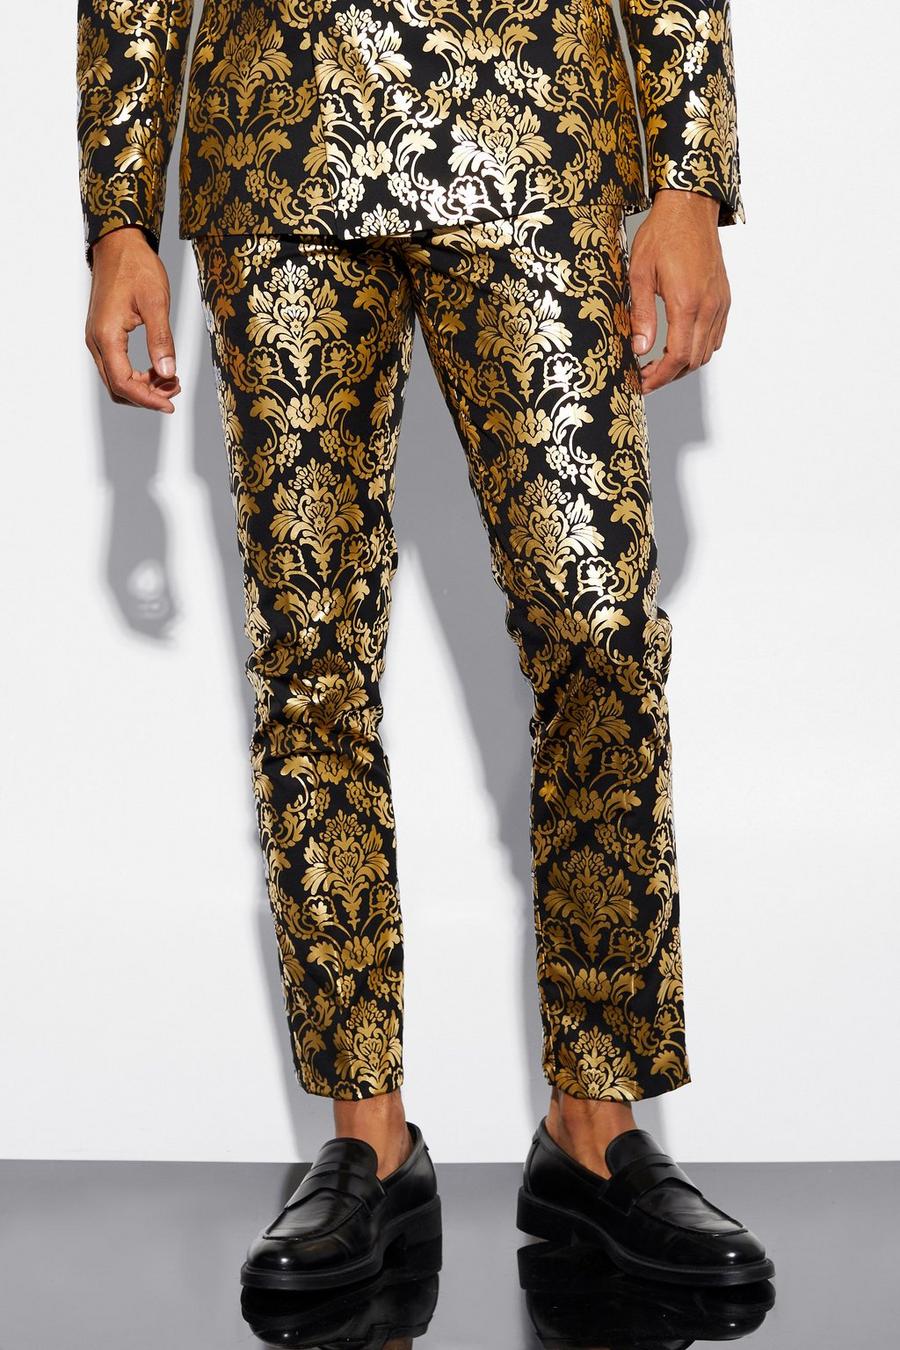 Pantaloni completo alla caviglia Slim Fit in raso in fantasia barocca, Gold metallizzato